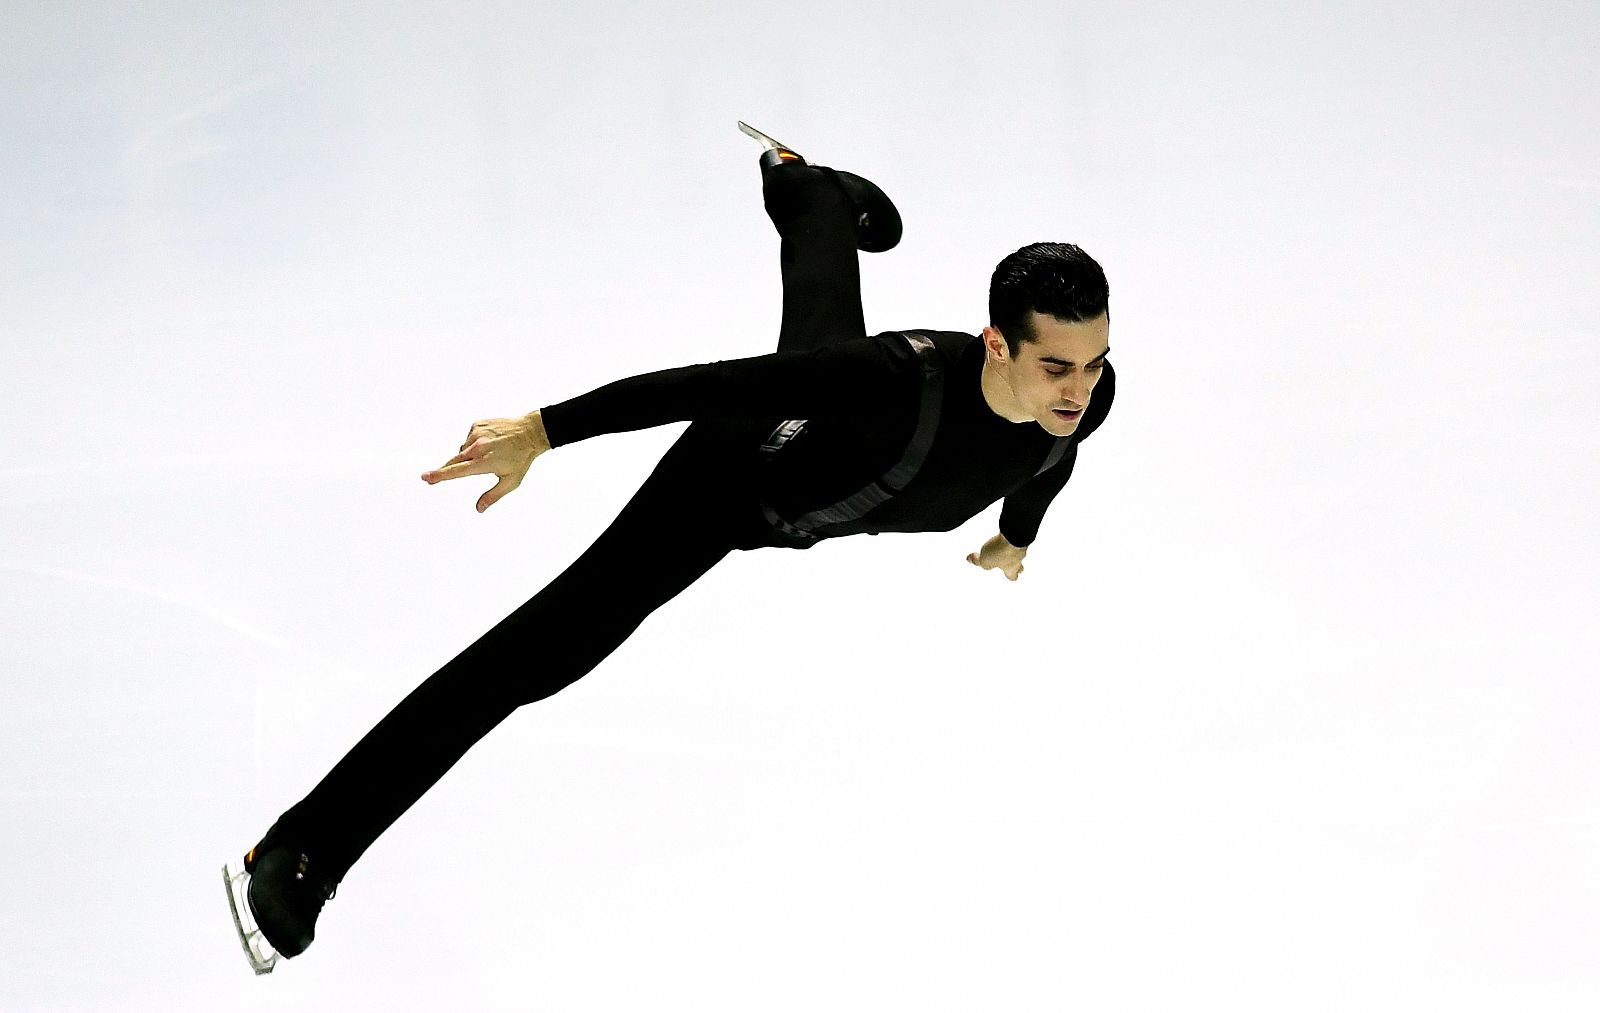 Imagen del patinador español Javier Fernández durante su actuación.